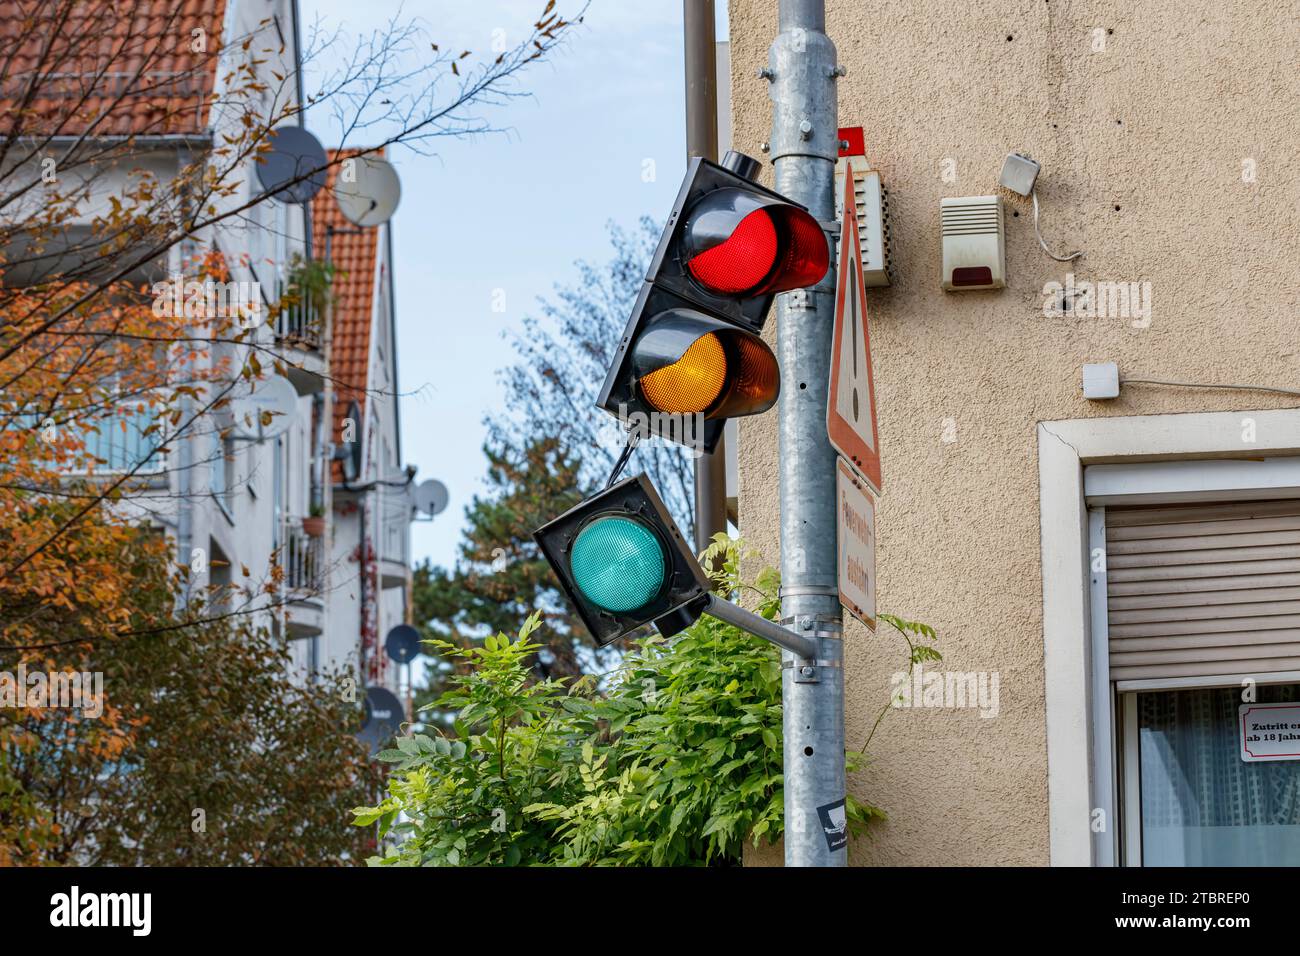 Semaforo rotto, immagine simbolica per la coalizione di semafori divisa in Germania Foto Stock